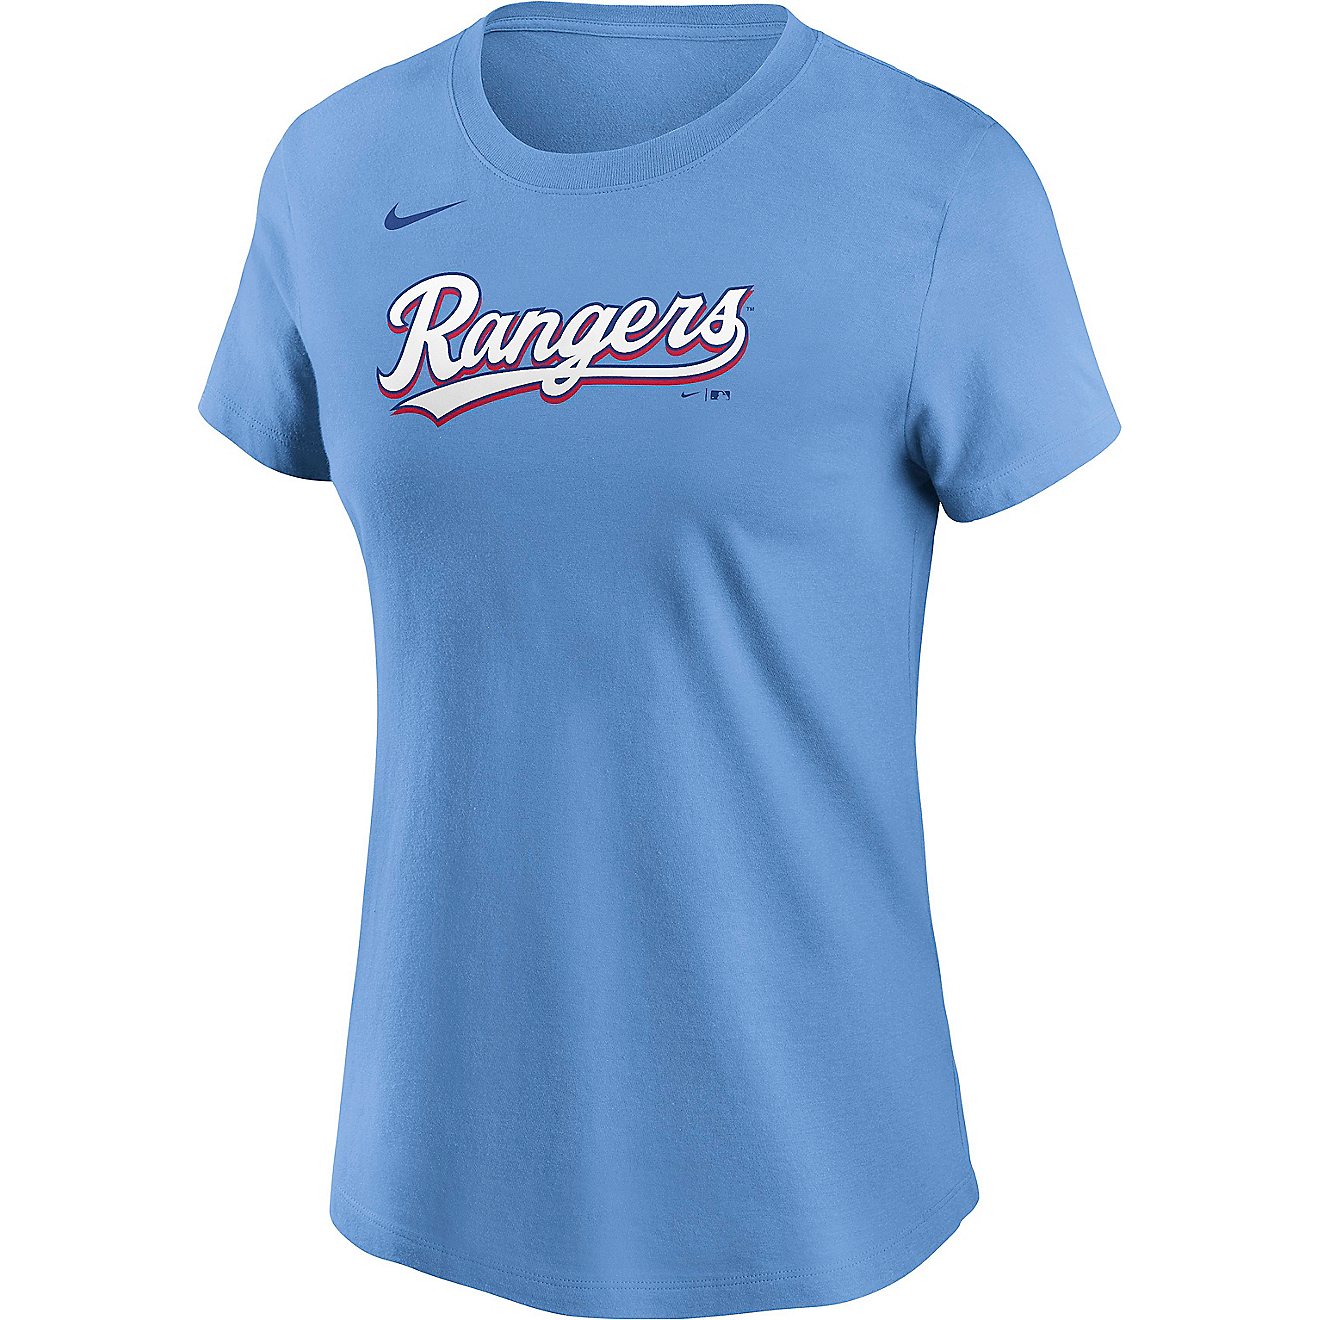 women's texas rangers t shirt